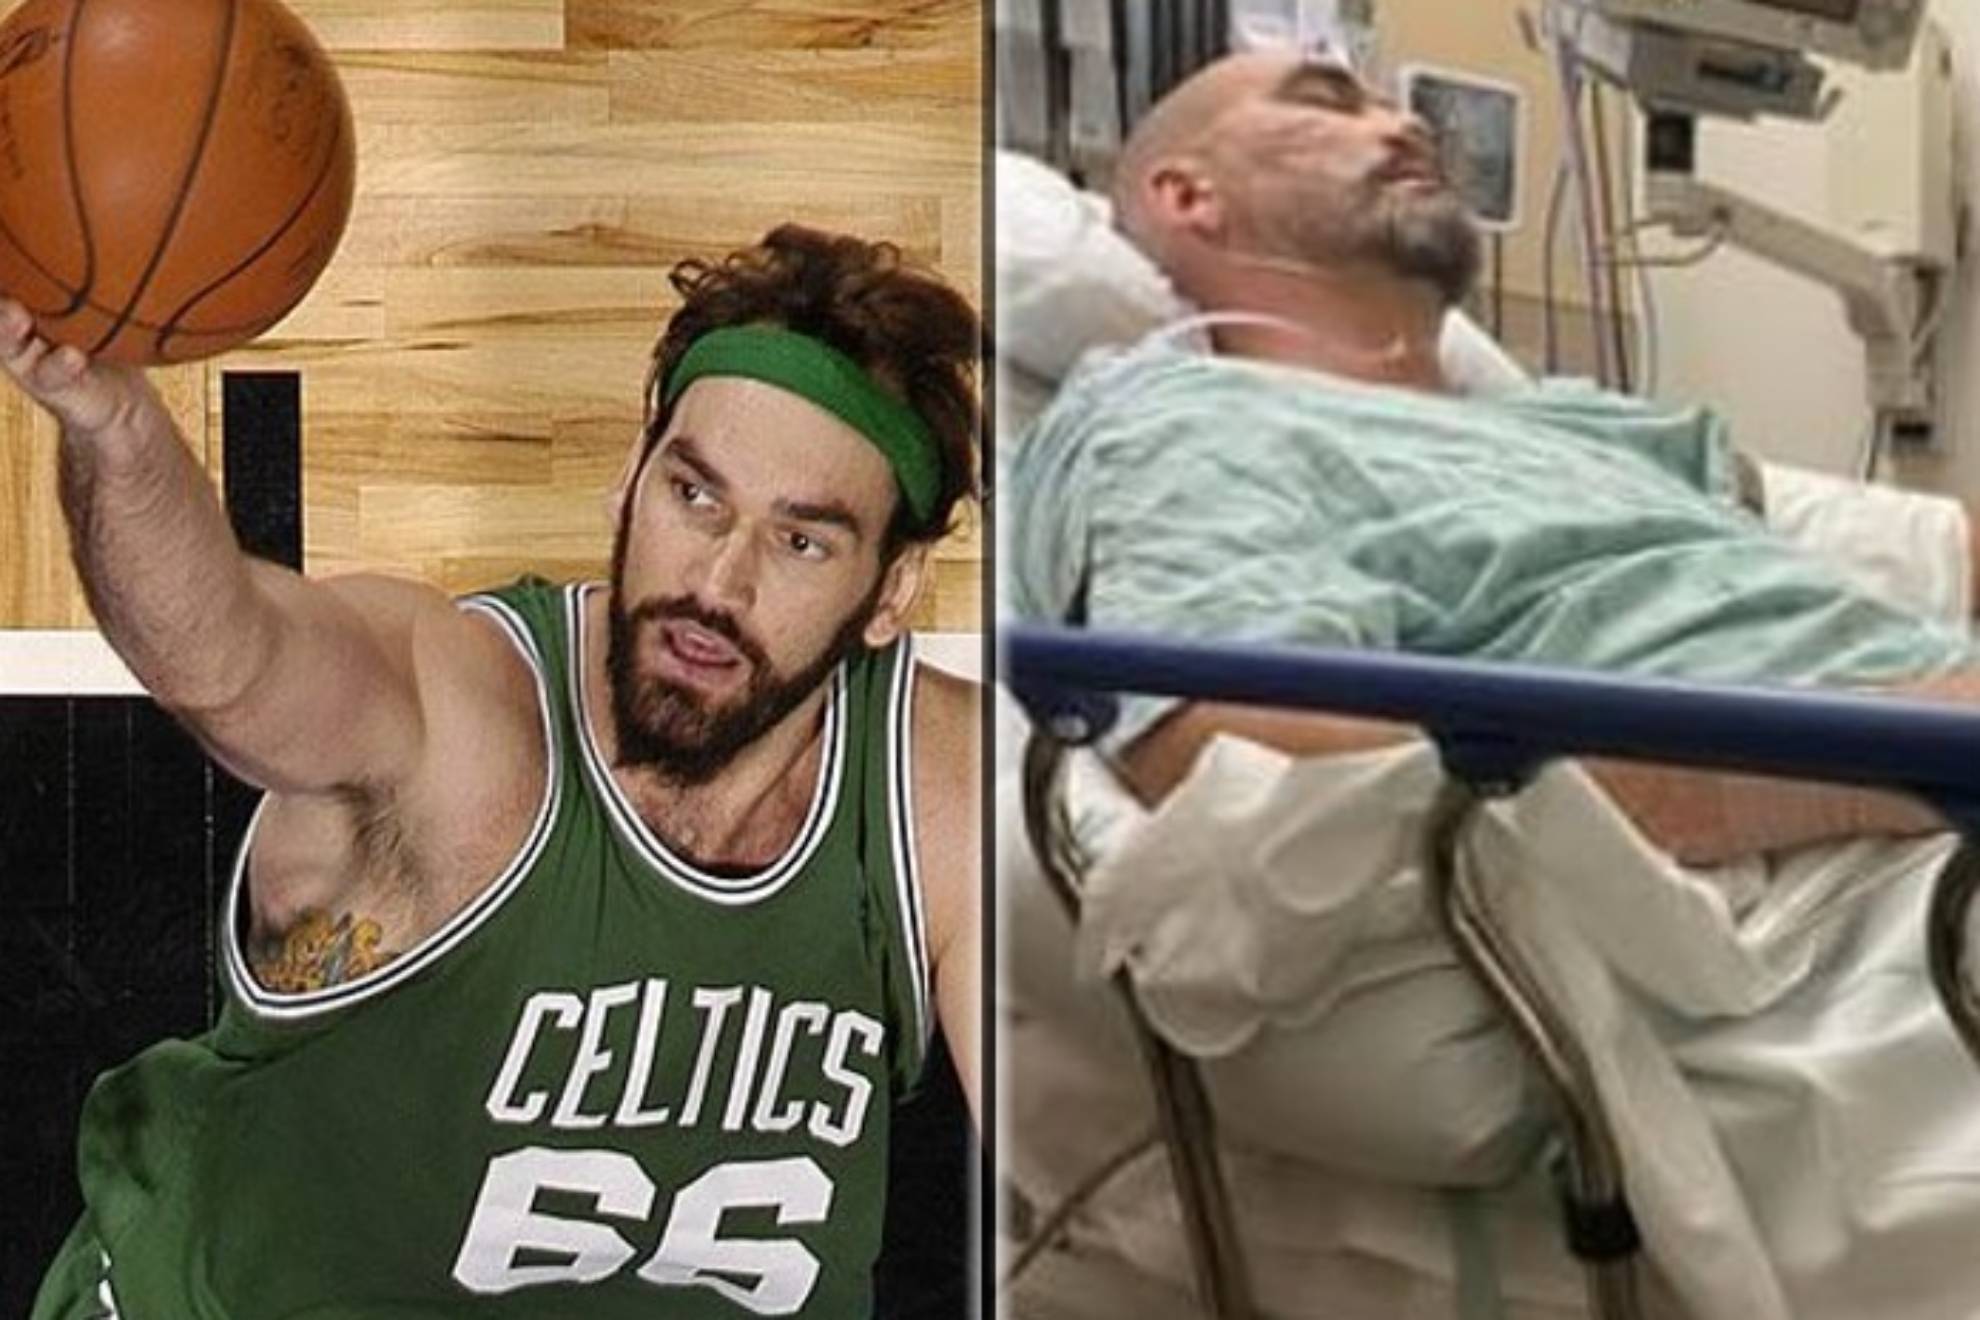 Un pívot campeón de la NBA espera un trasplante de corazón... gigante: Pollard relata su dramática situación